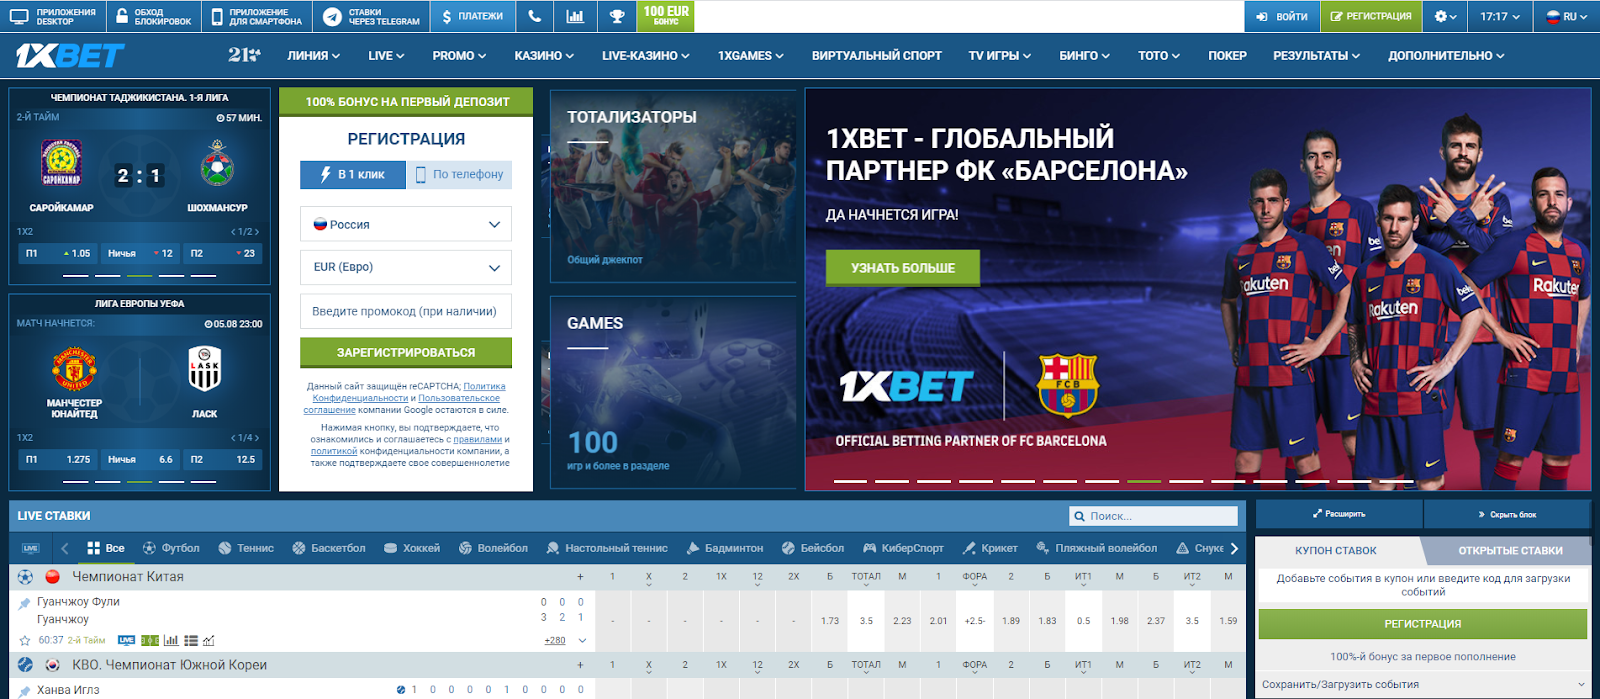 xbet-1xbet.bitbucket.io- официальный сайт: регистрация и вход ,приложение